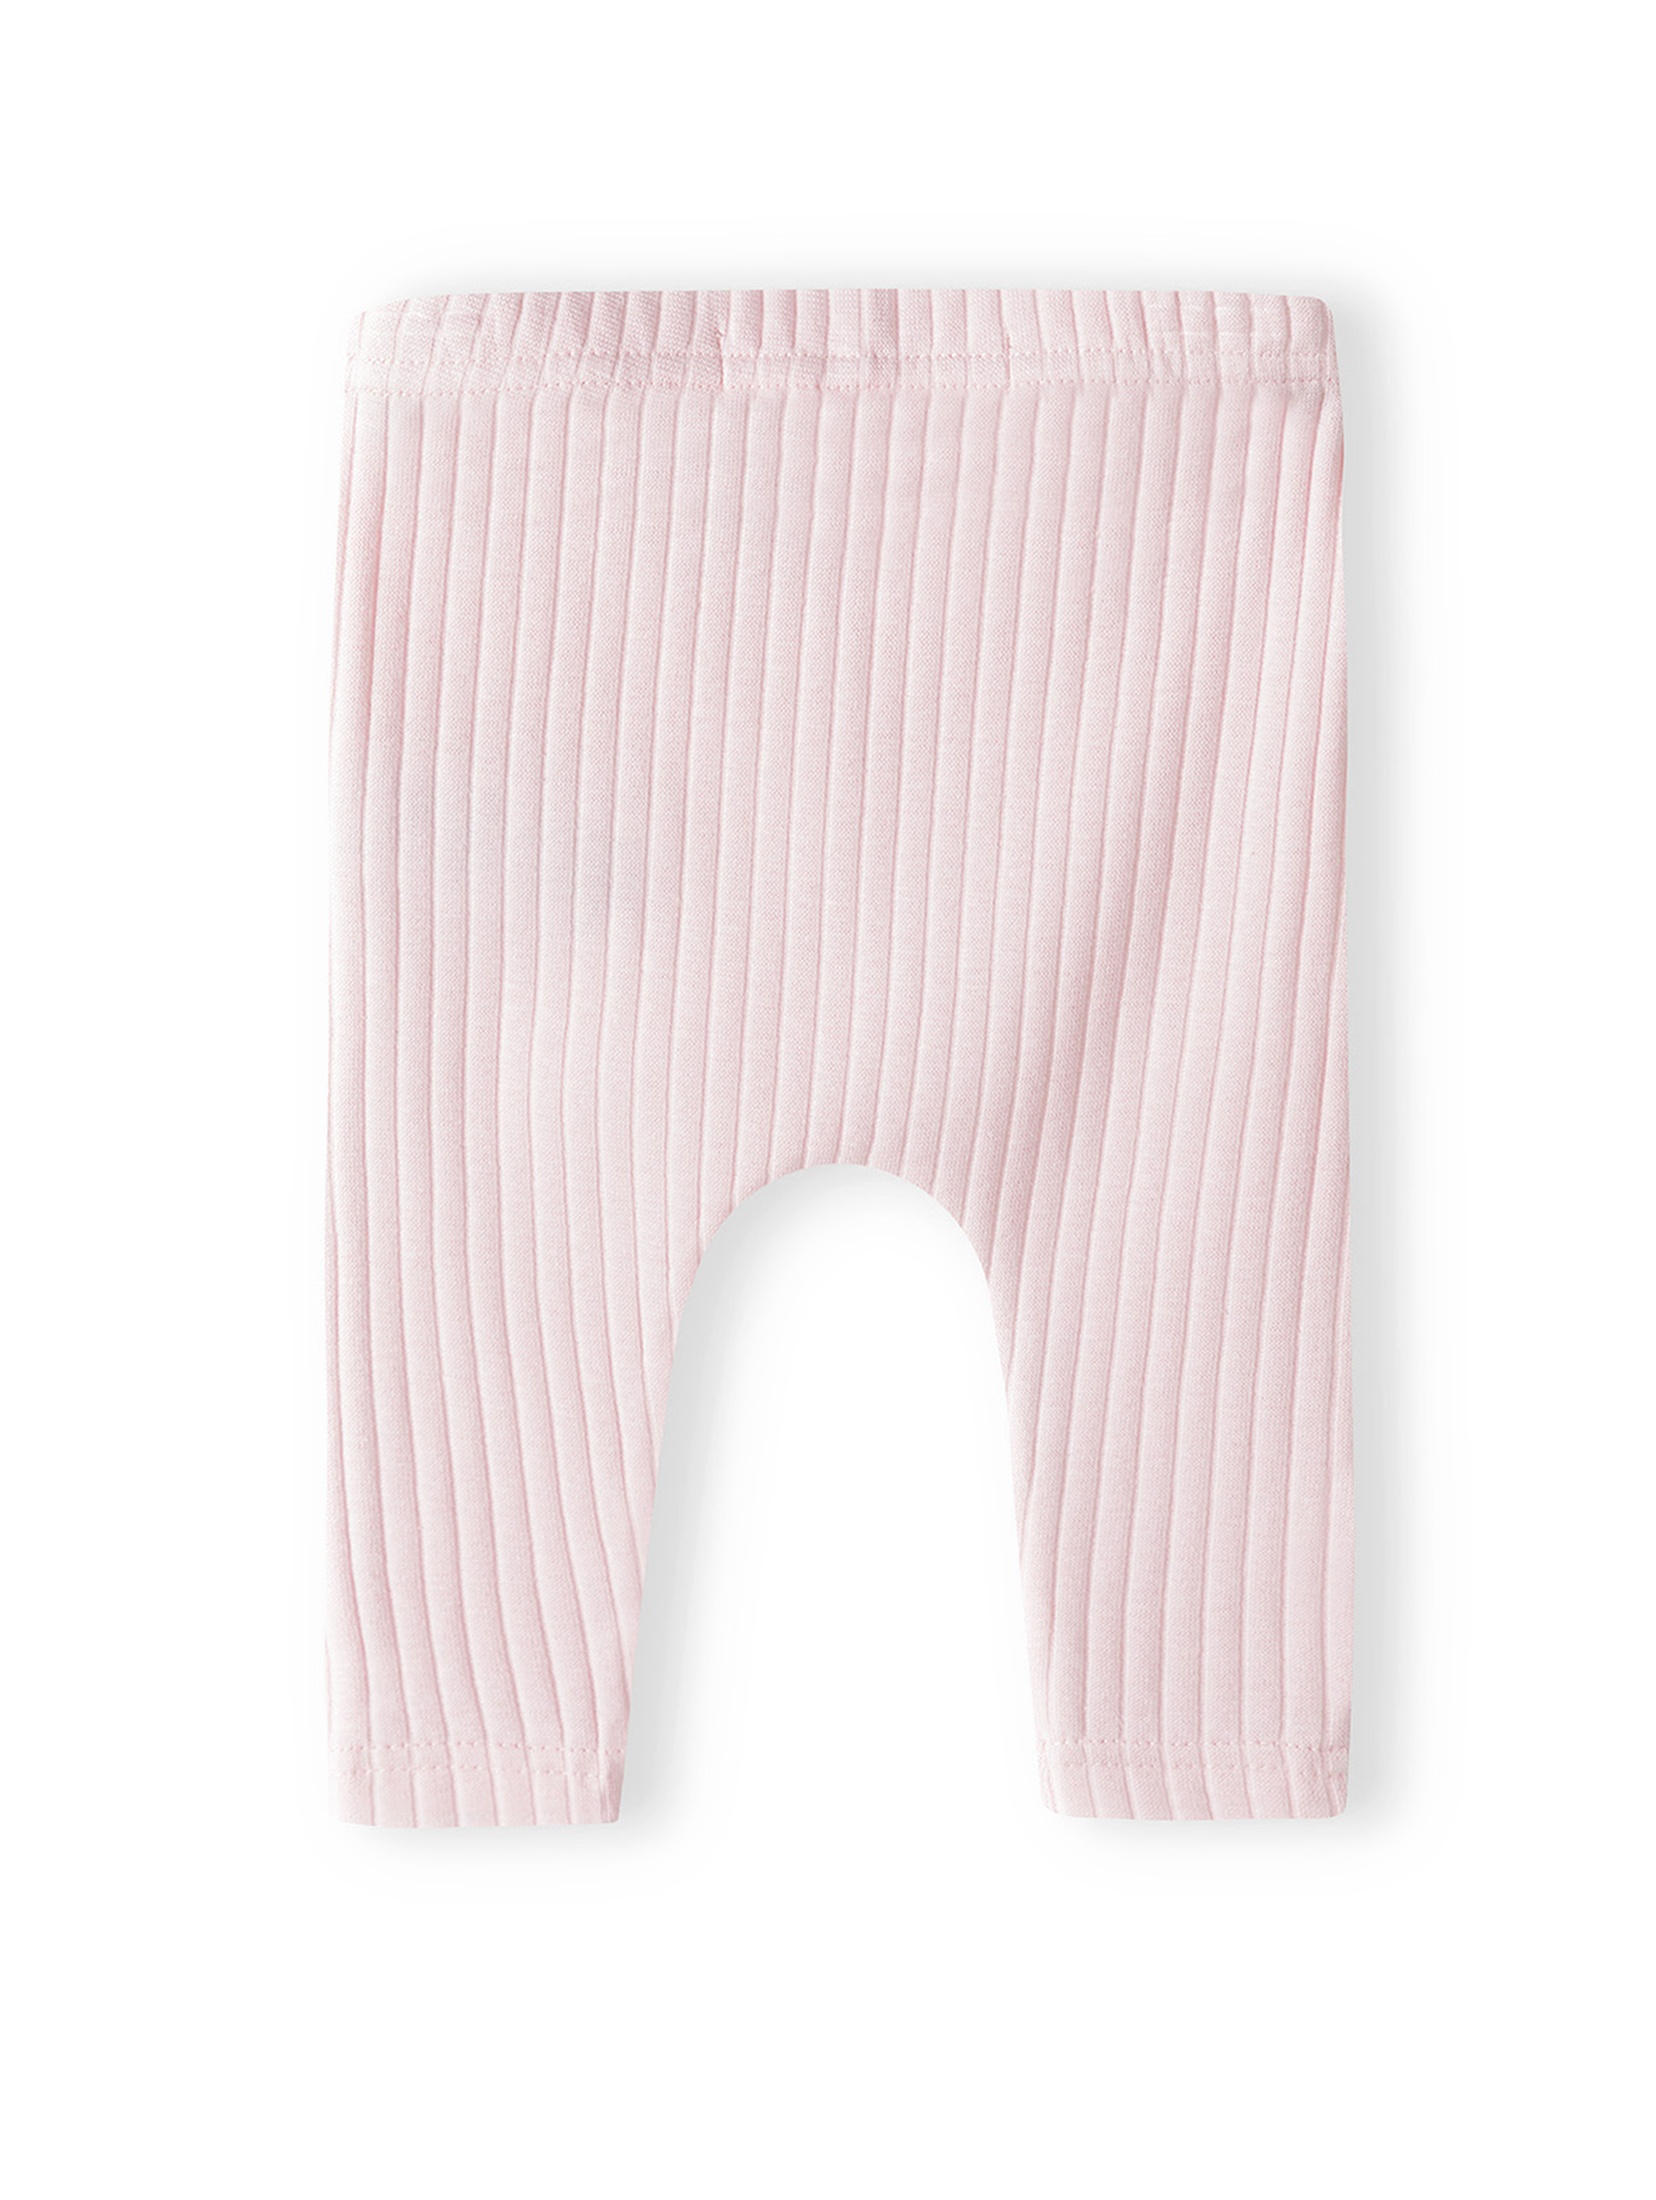 Komplet niemowlęcy- białe body w tęcze + różowe legginsy